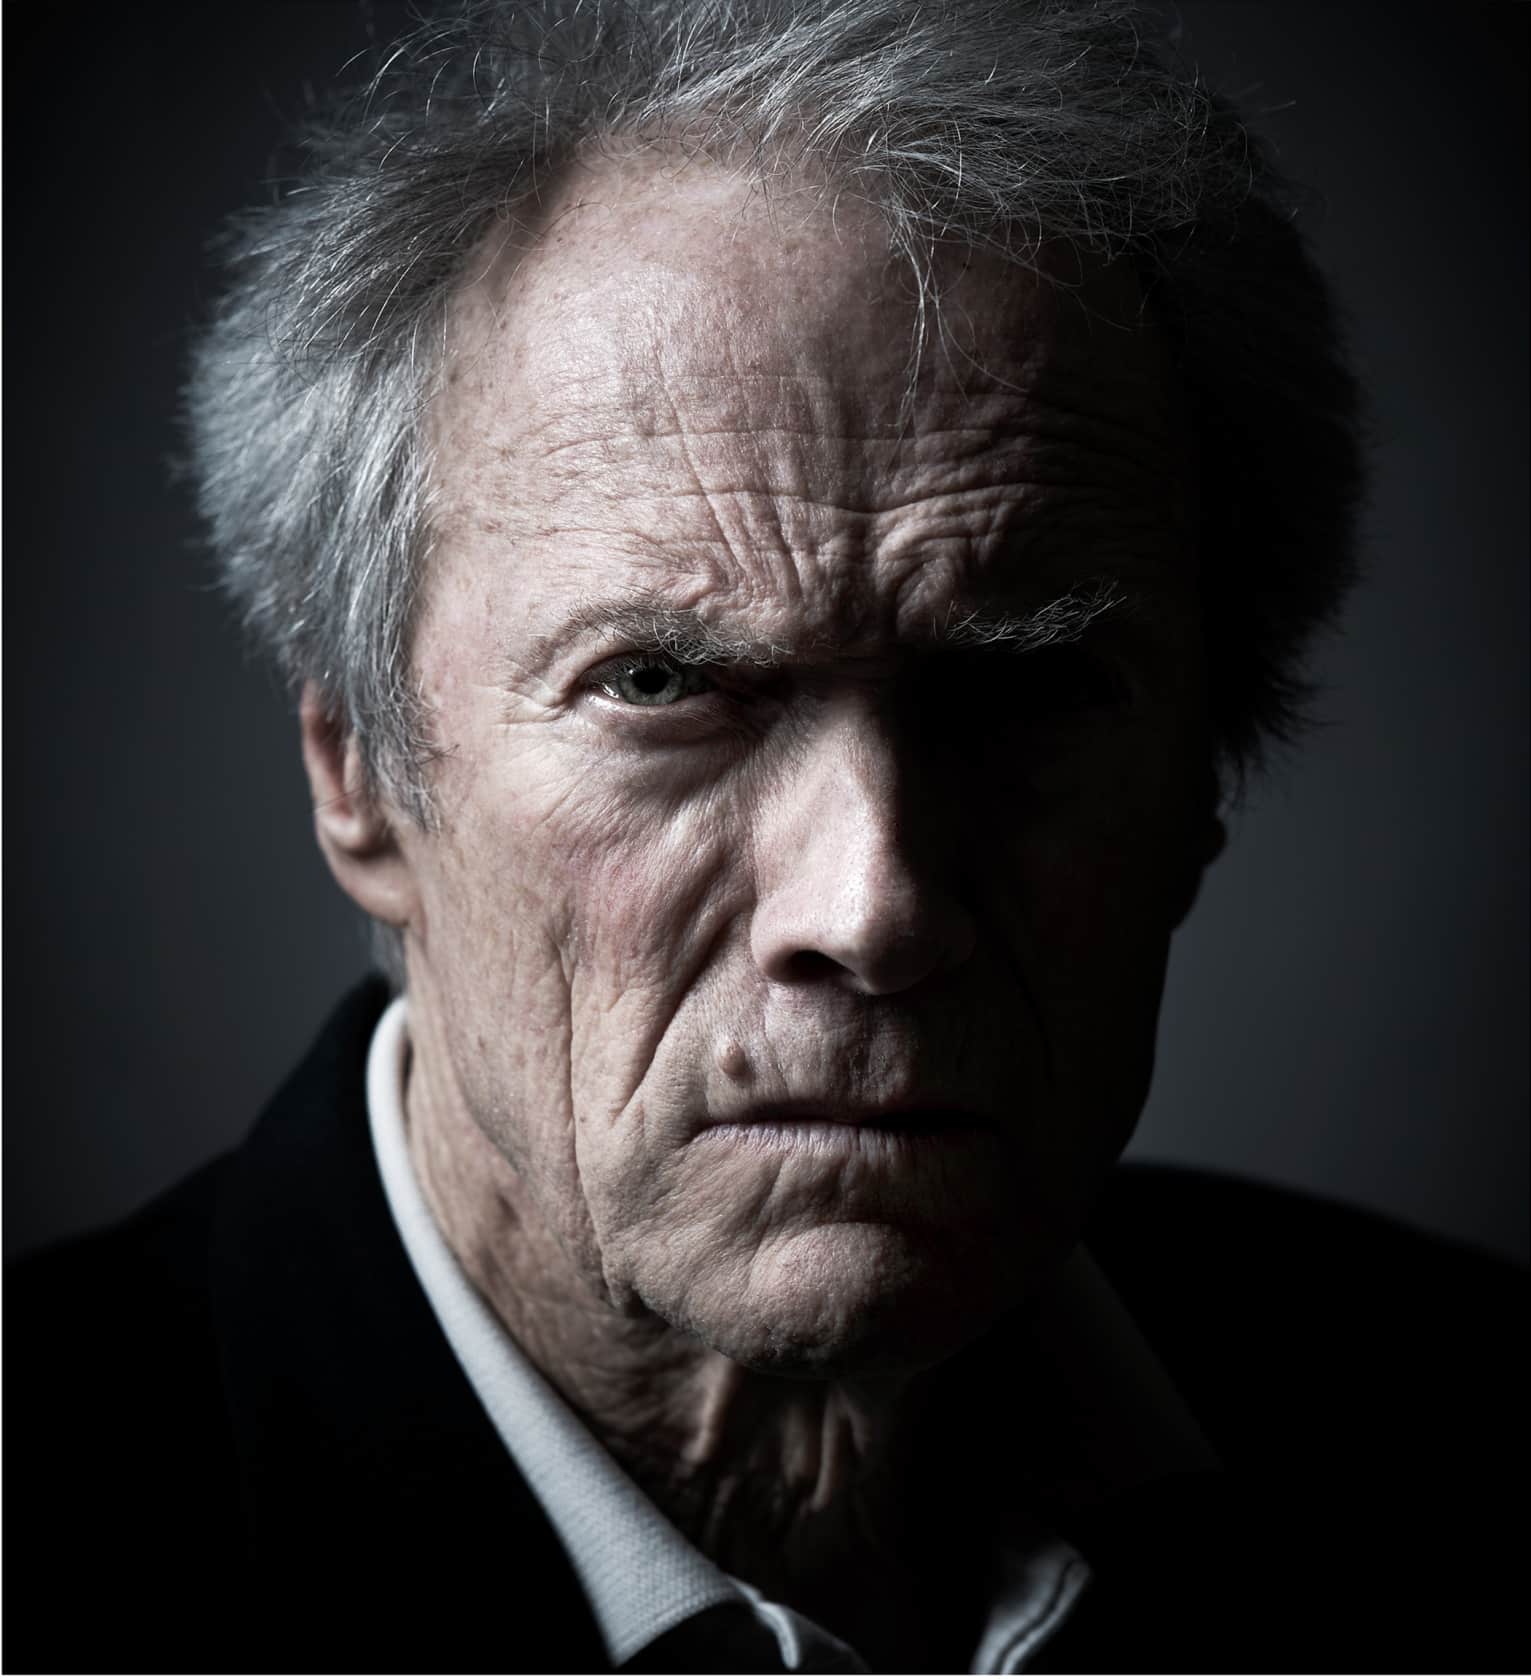 Andy Gotts, Clint Eastwood, 2010